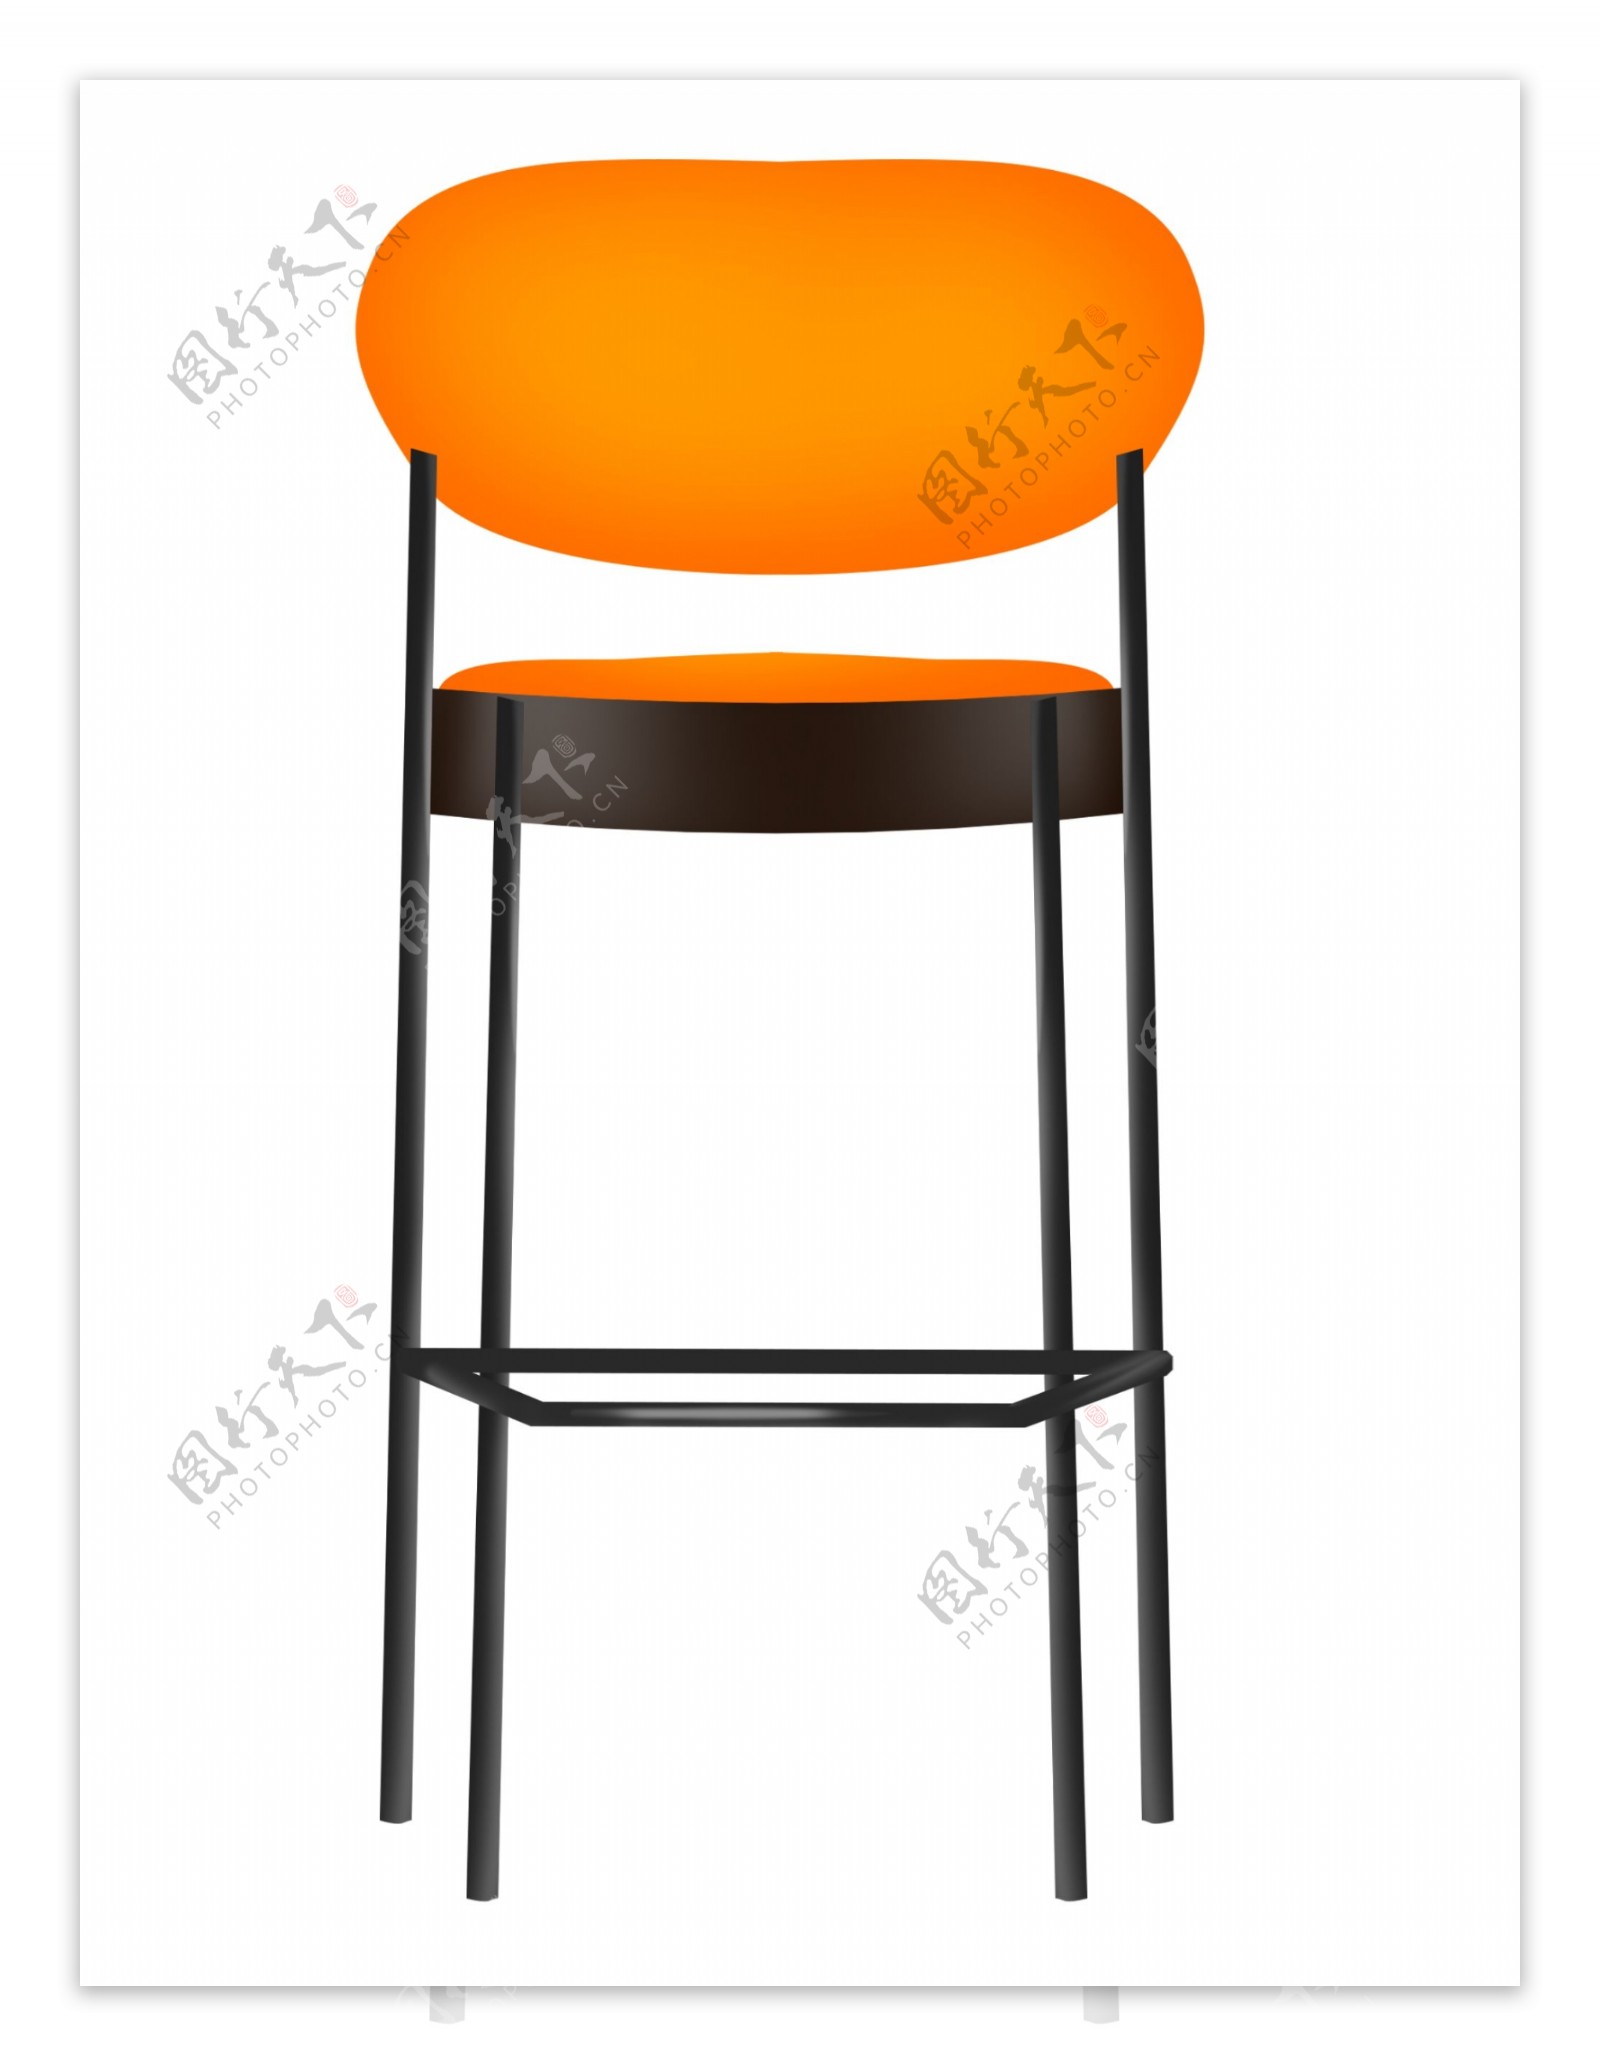 橘色椅子座位插画